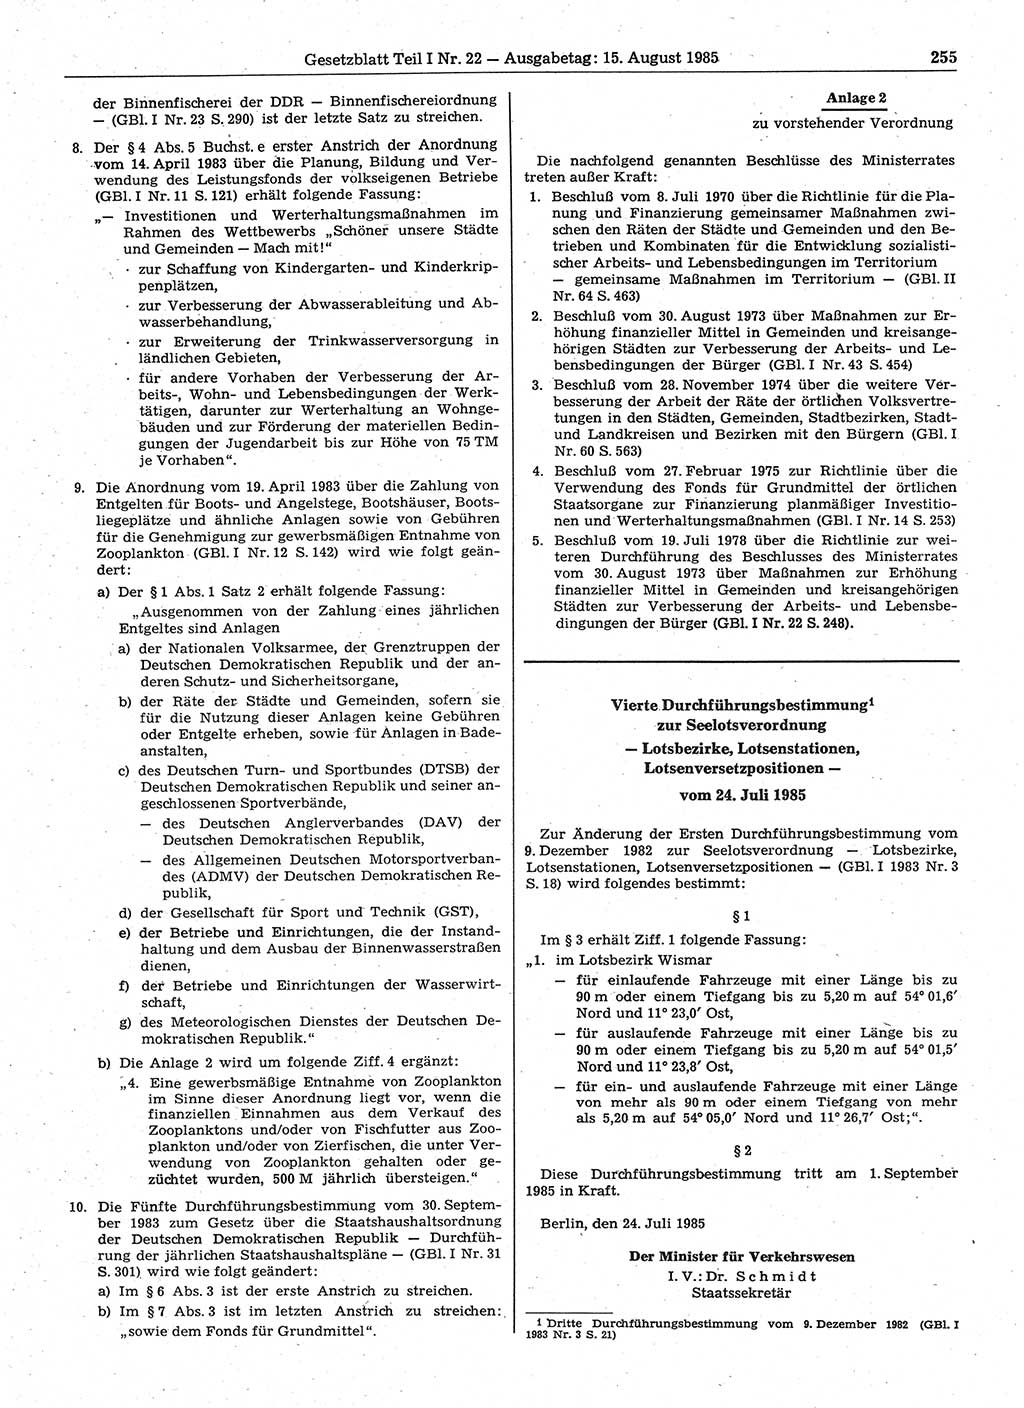 Gesetzblatt (GBl.) der Deutschen Demokratischen Republik (DDR) Teil Ⅰ 1985, Seite 255 (GBl. DDR Ⅰ 1985, S. 255)